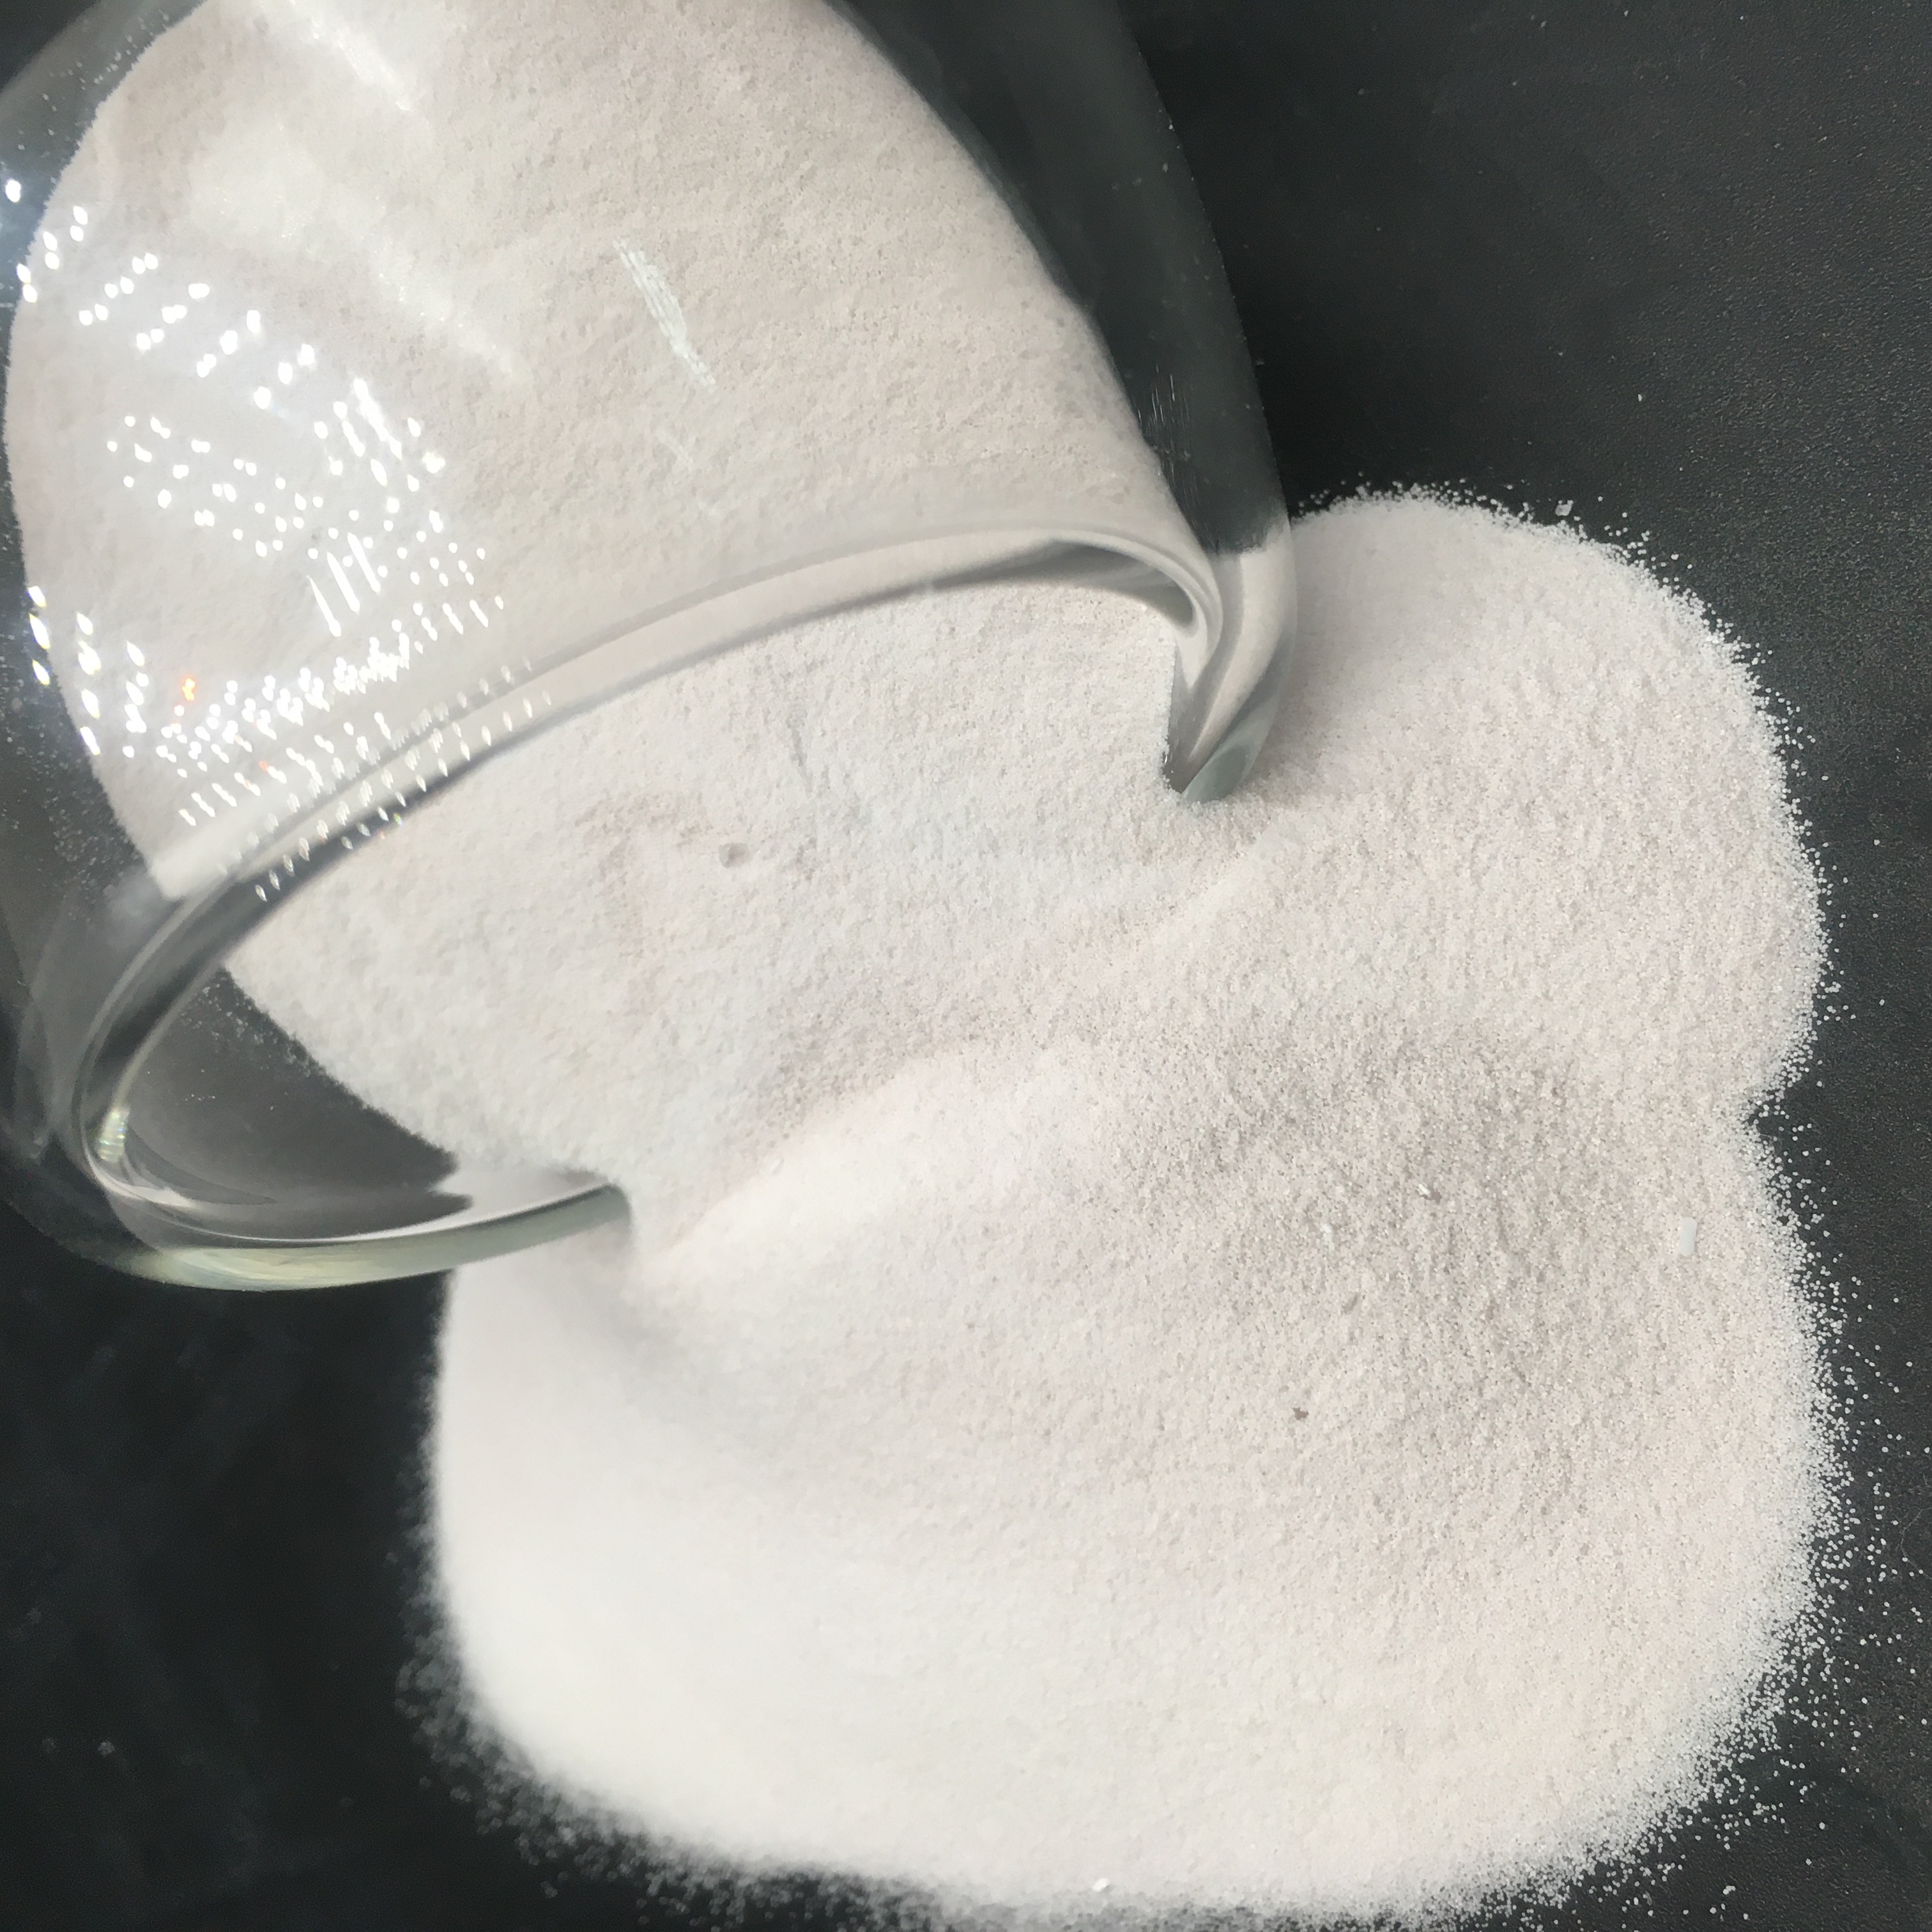 additifs alimentaires poudre de sulfate de manganèse de qualité alimentaire granulaire 32 e (mnso4h2o) prix